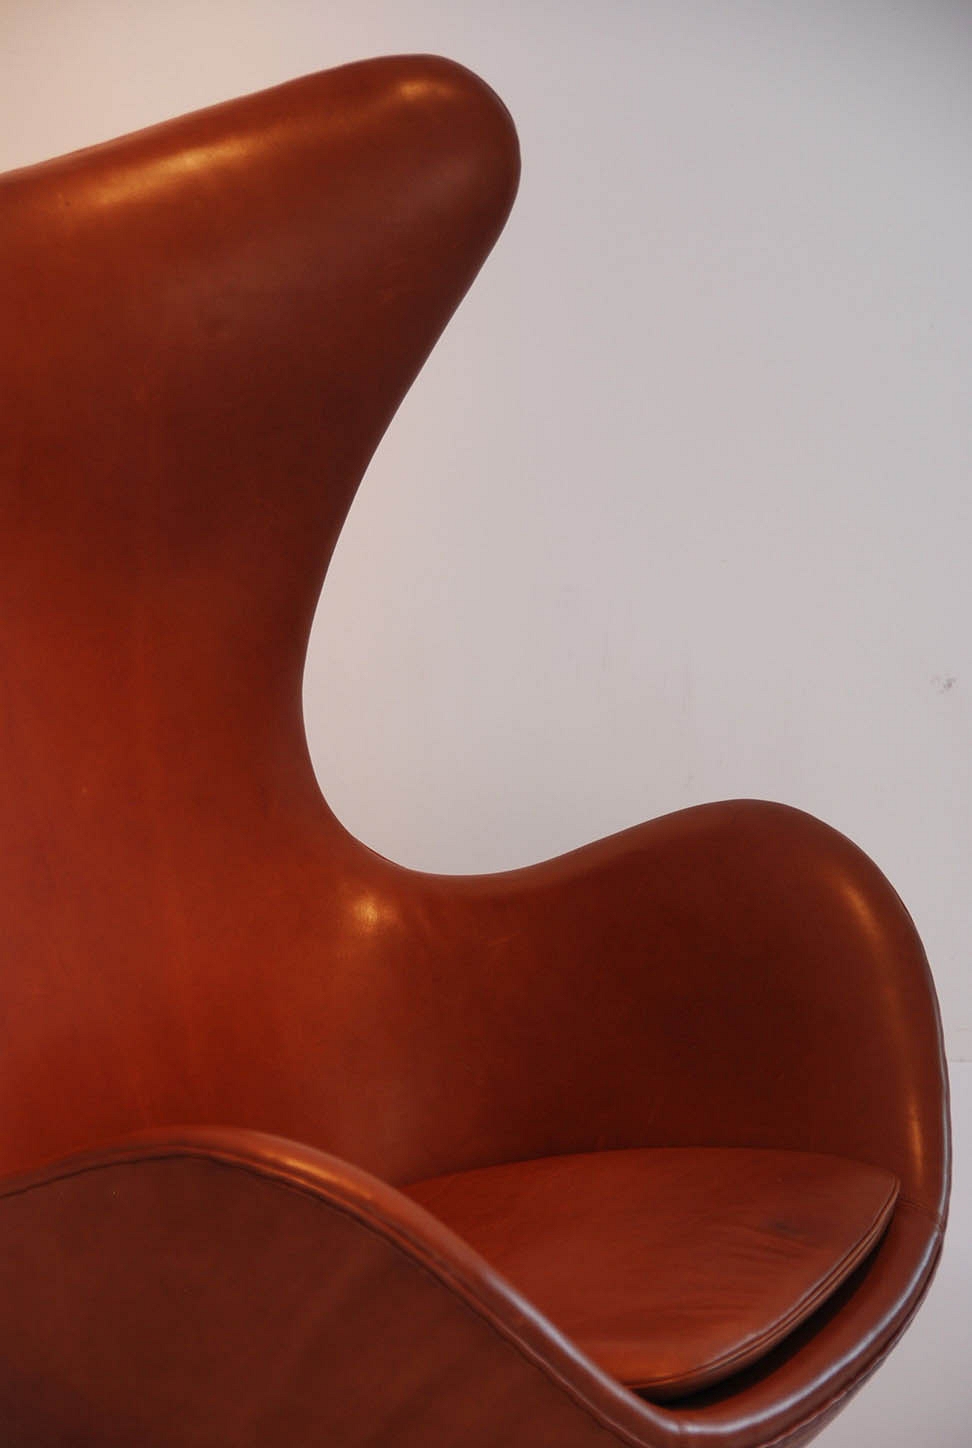 Arne Jacobsen "egg chair"